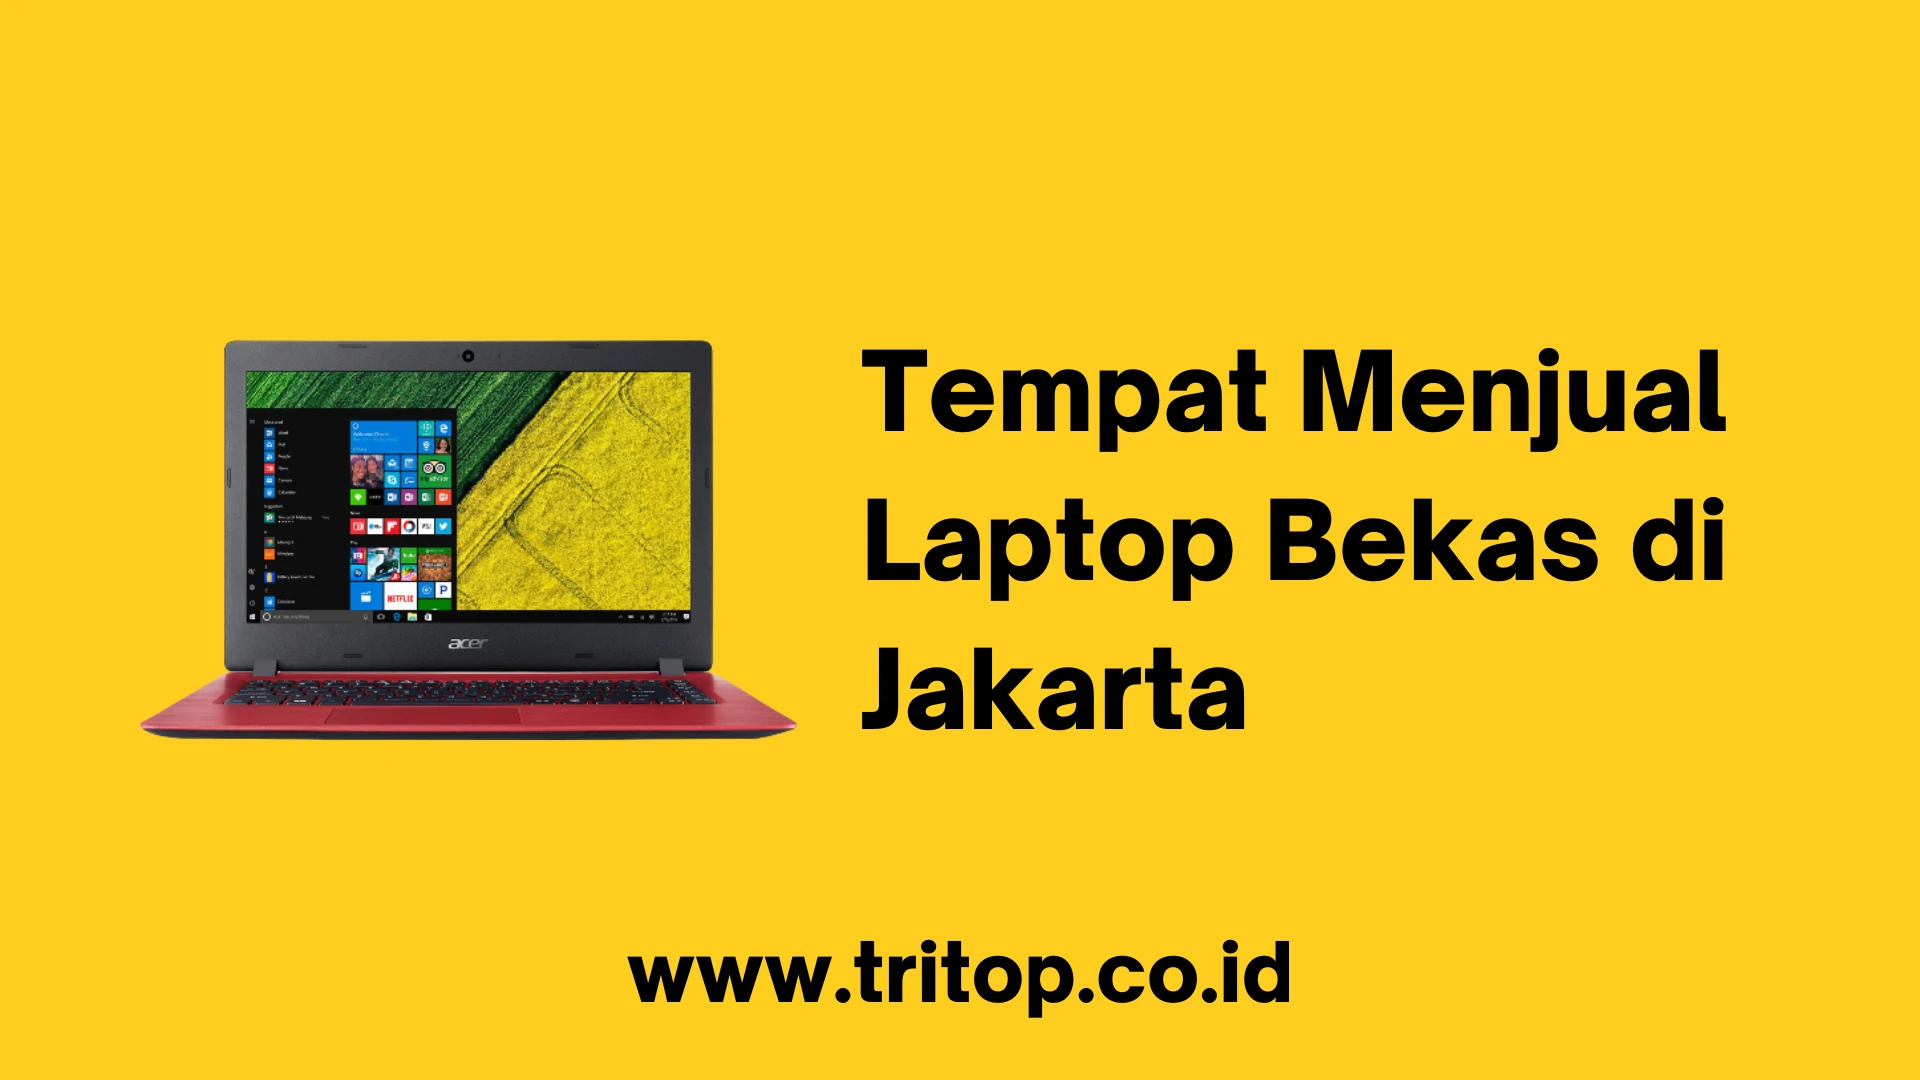 Tempat Menjual Laptop Bekas di Jakarta